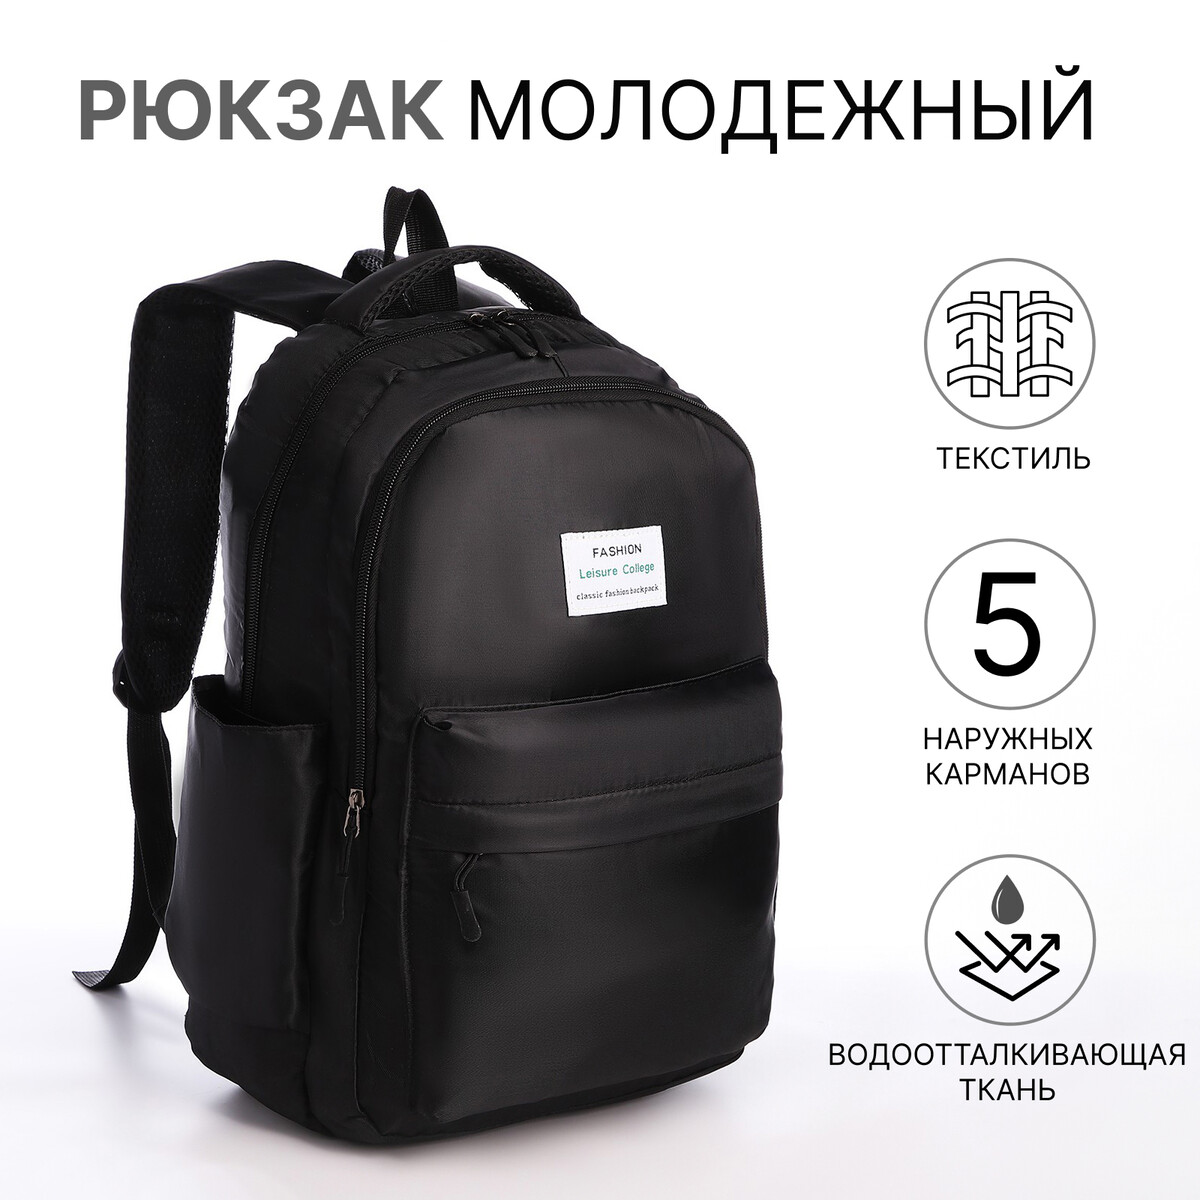 Рюкзак молодежный из текстиля на молнии, 5 карманов, цвет черный No brand